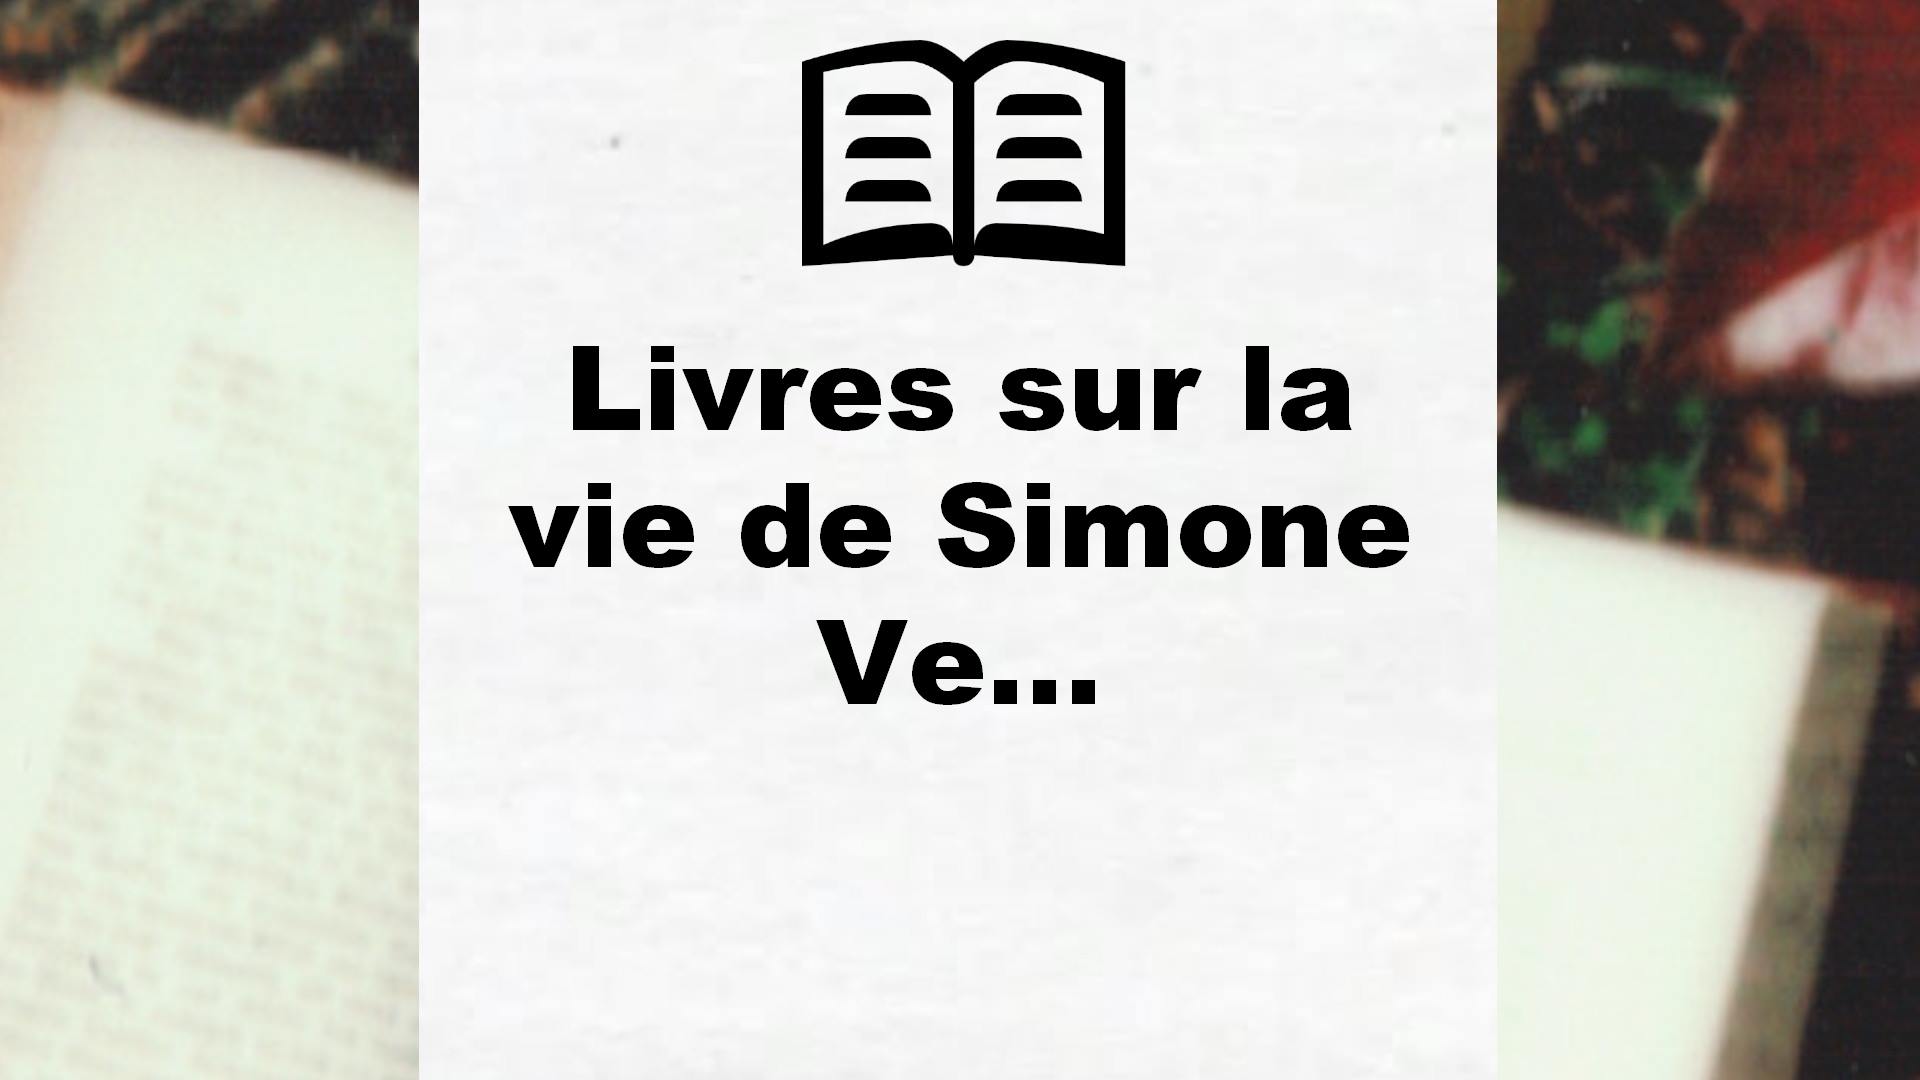 Livres sur la vie de Simone Veil